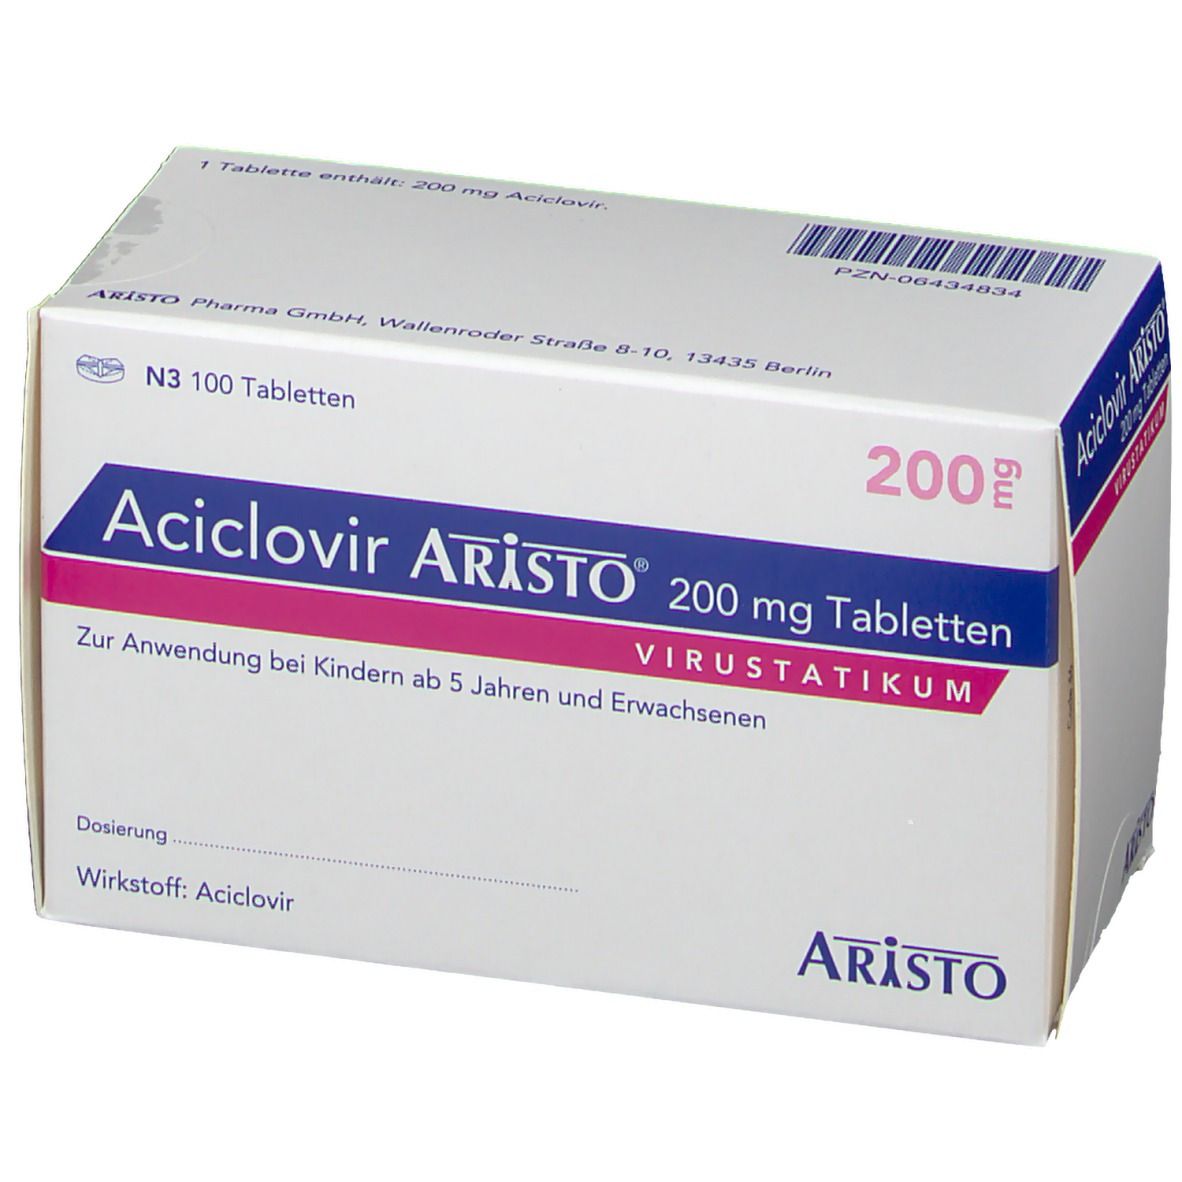 Aciclovir Aristo® 200 mg